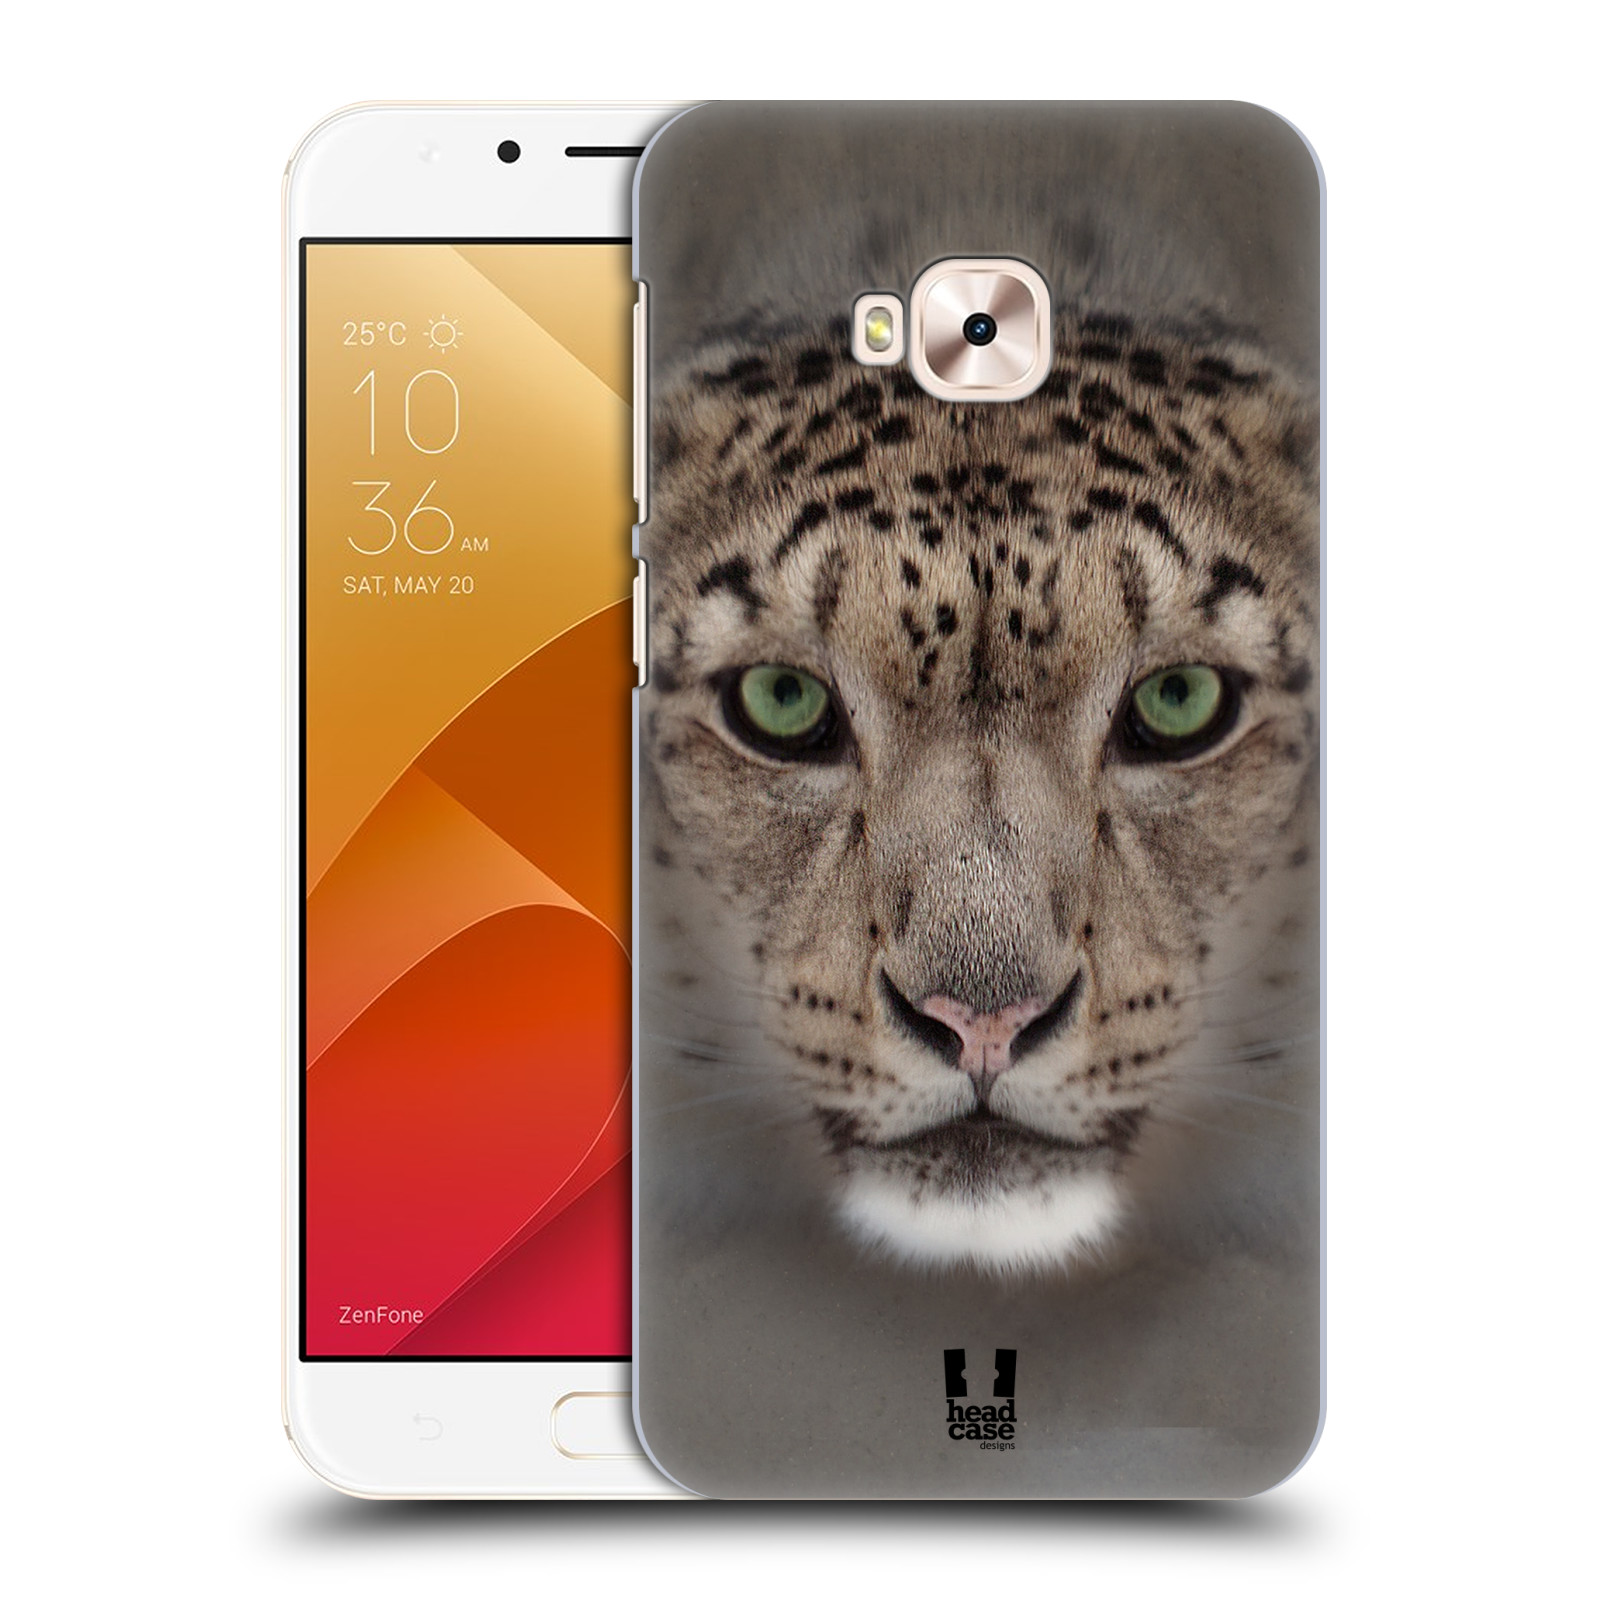 HEAD CASE plastový obal na mobil Asus Zenfone 4 Selfie Pro ZD552KL vzor Zvířecí tváře 2 sněžný leopard